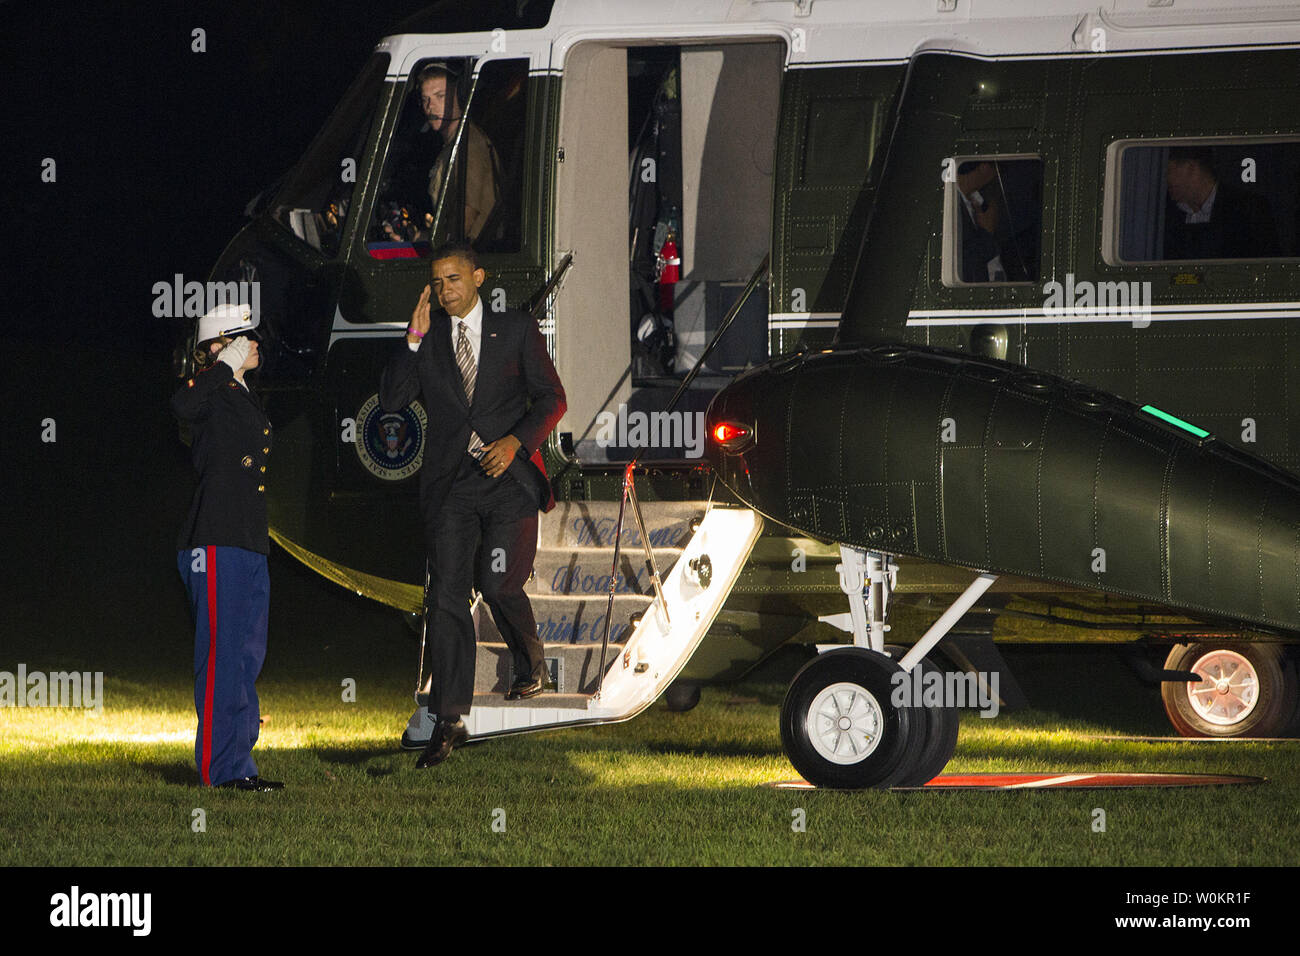 25 de octubre de 2012 - Washington, DC - El presidente Barack Obama camina en el Jardín Sur de la Casa Blanca tras regresar a casa después de una serie de actos de campaña en todo el país. Crédito de la foto: Kristoffer Tripplaar/ Sipa Press Foto de stock